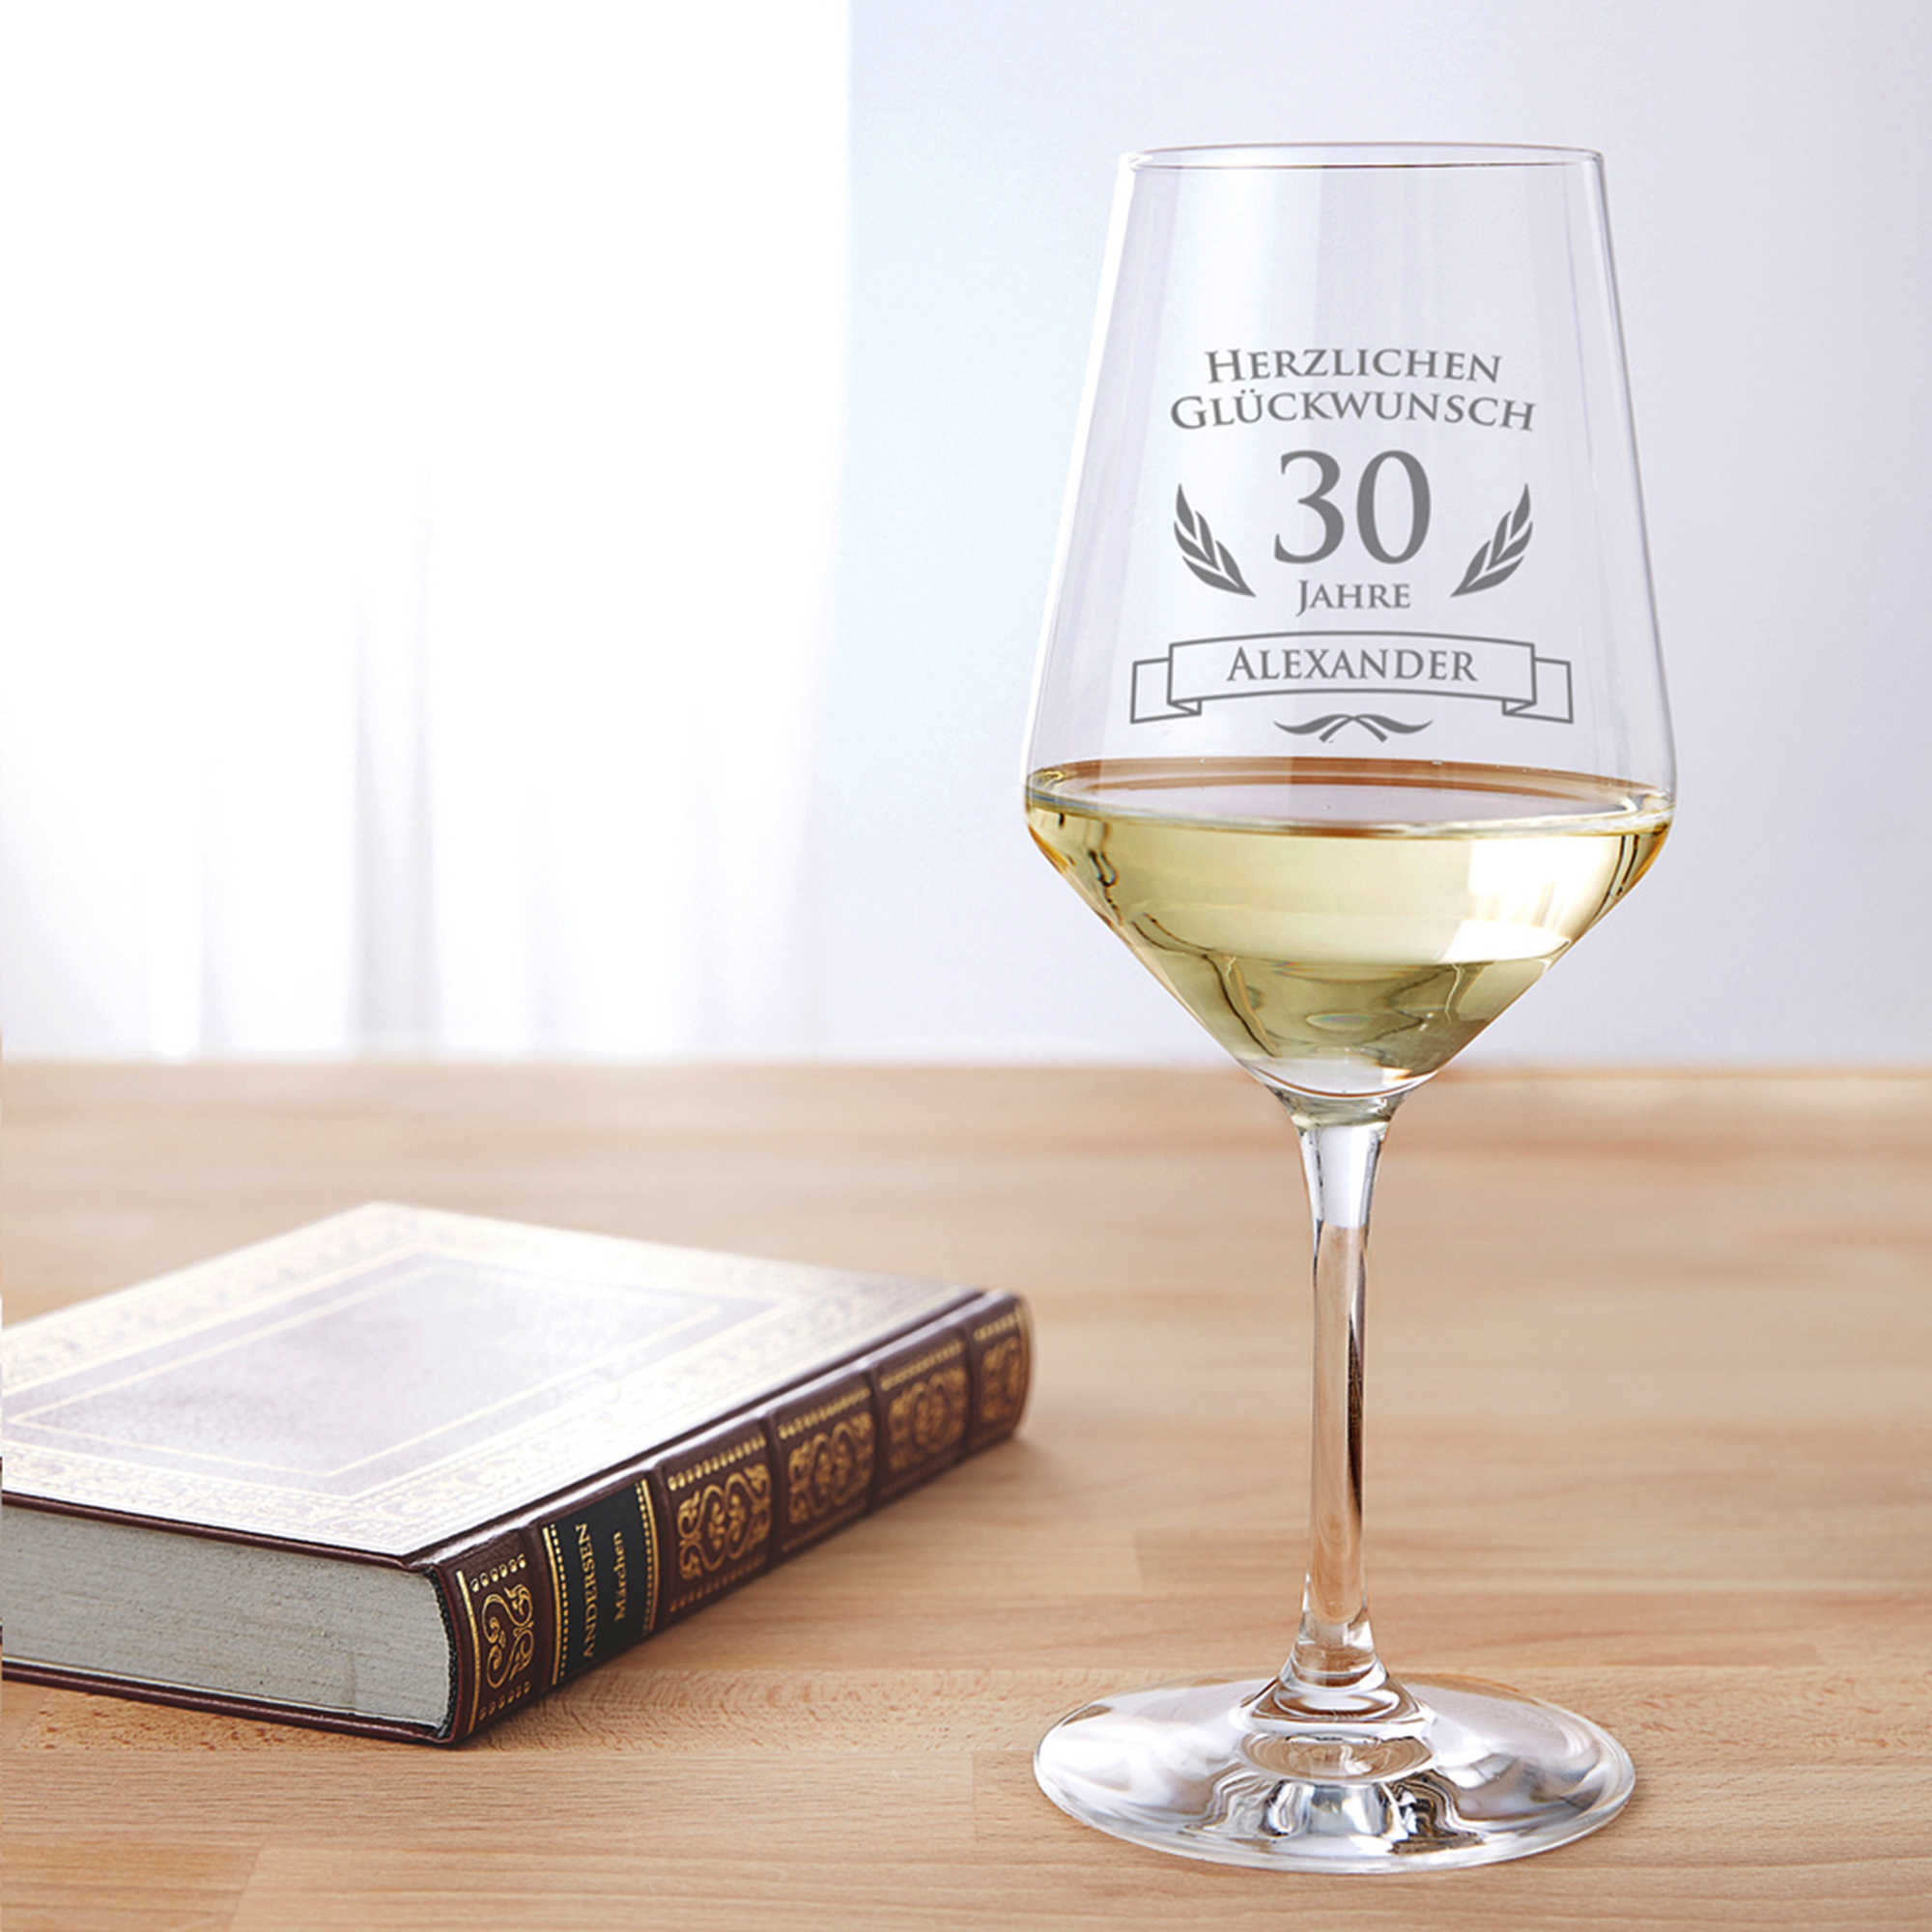 Weißweinglas zum 30. Geburtstag